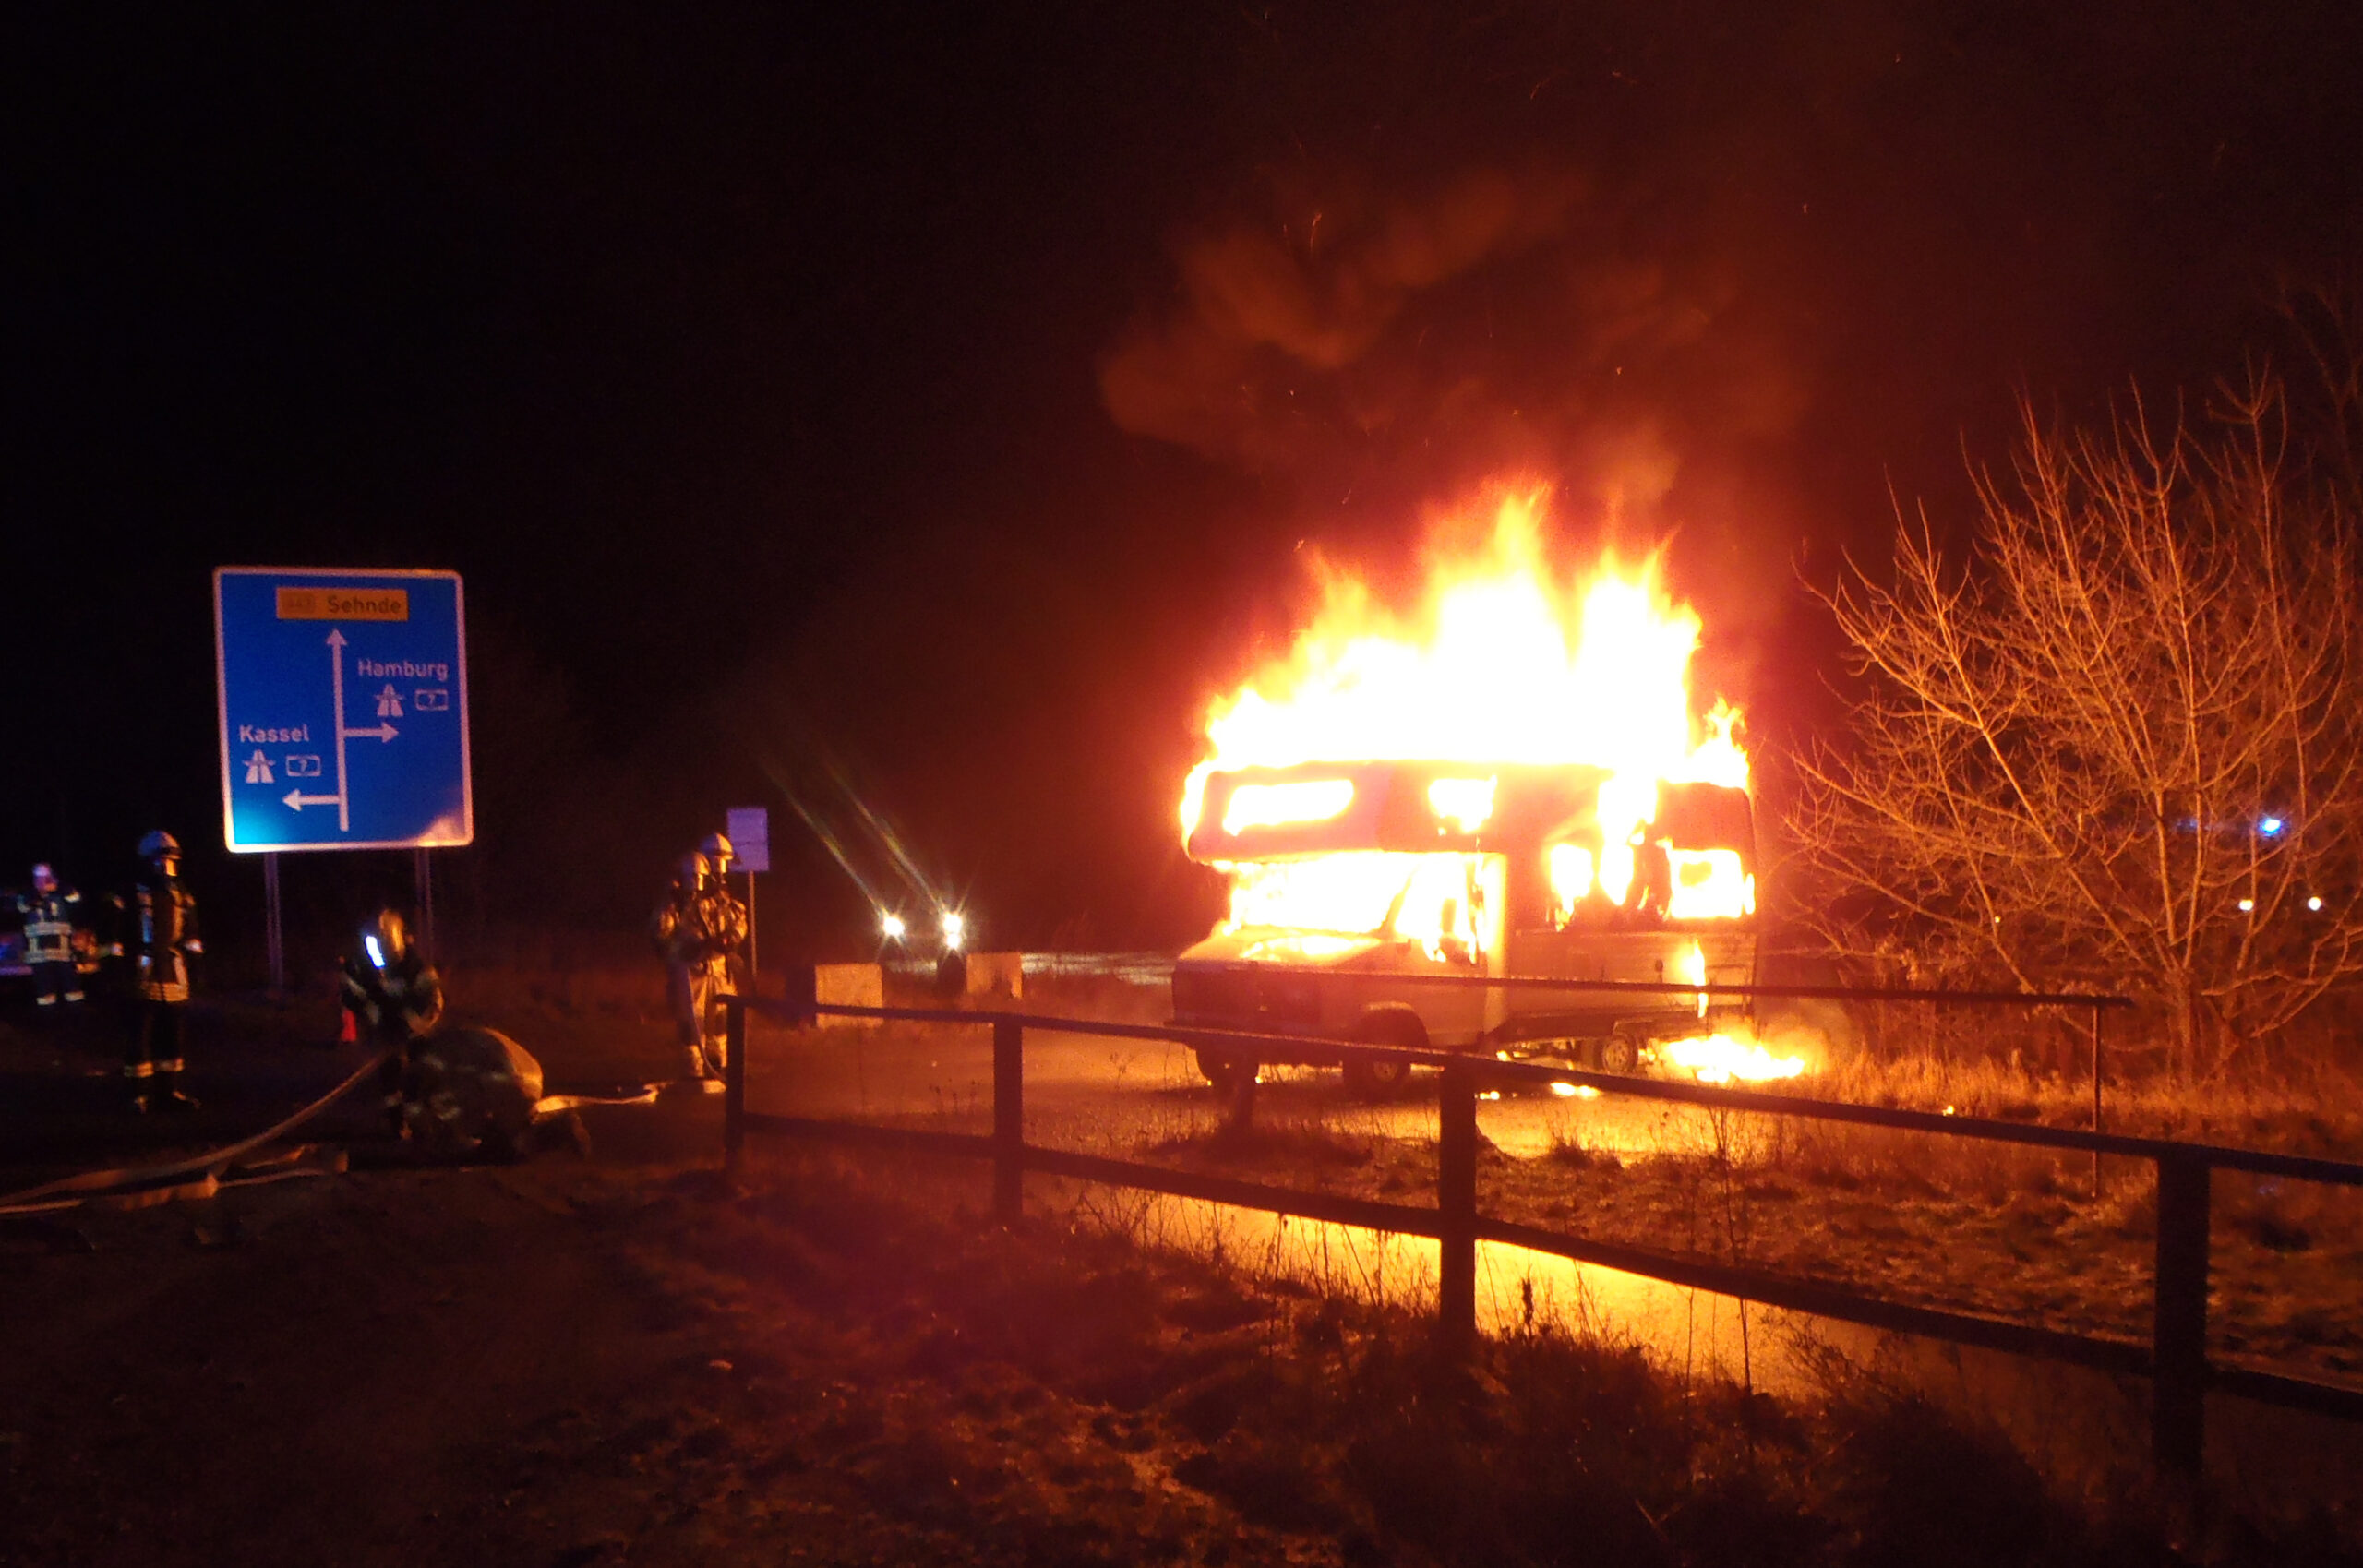 Am vergangenen Freitagabend ist ein Lovemobil bei Hamburg ausgebrannt (Symbolbild).